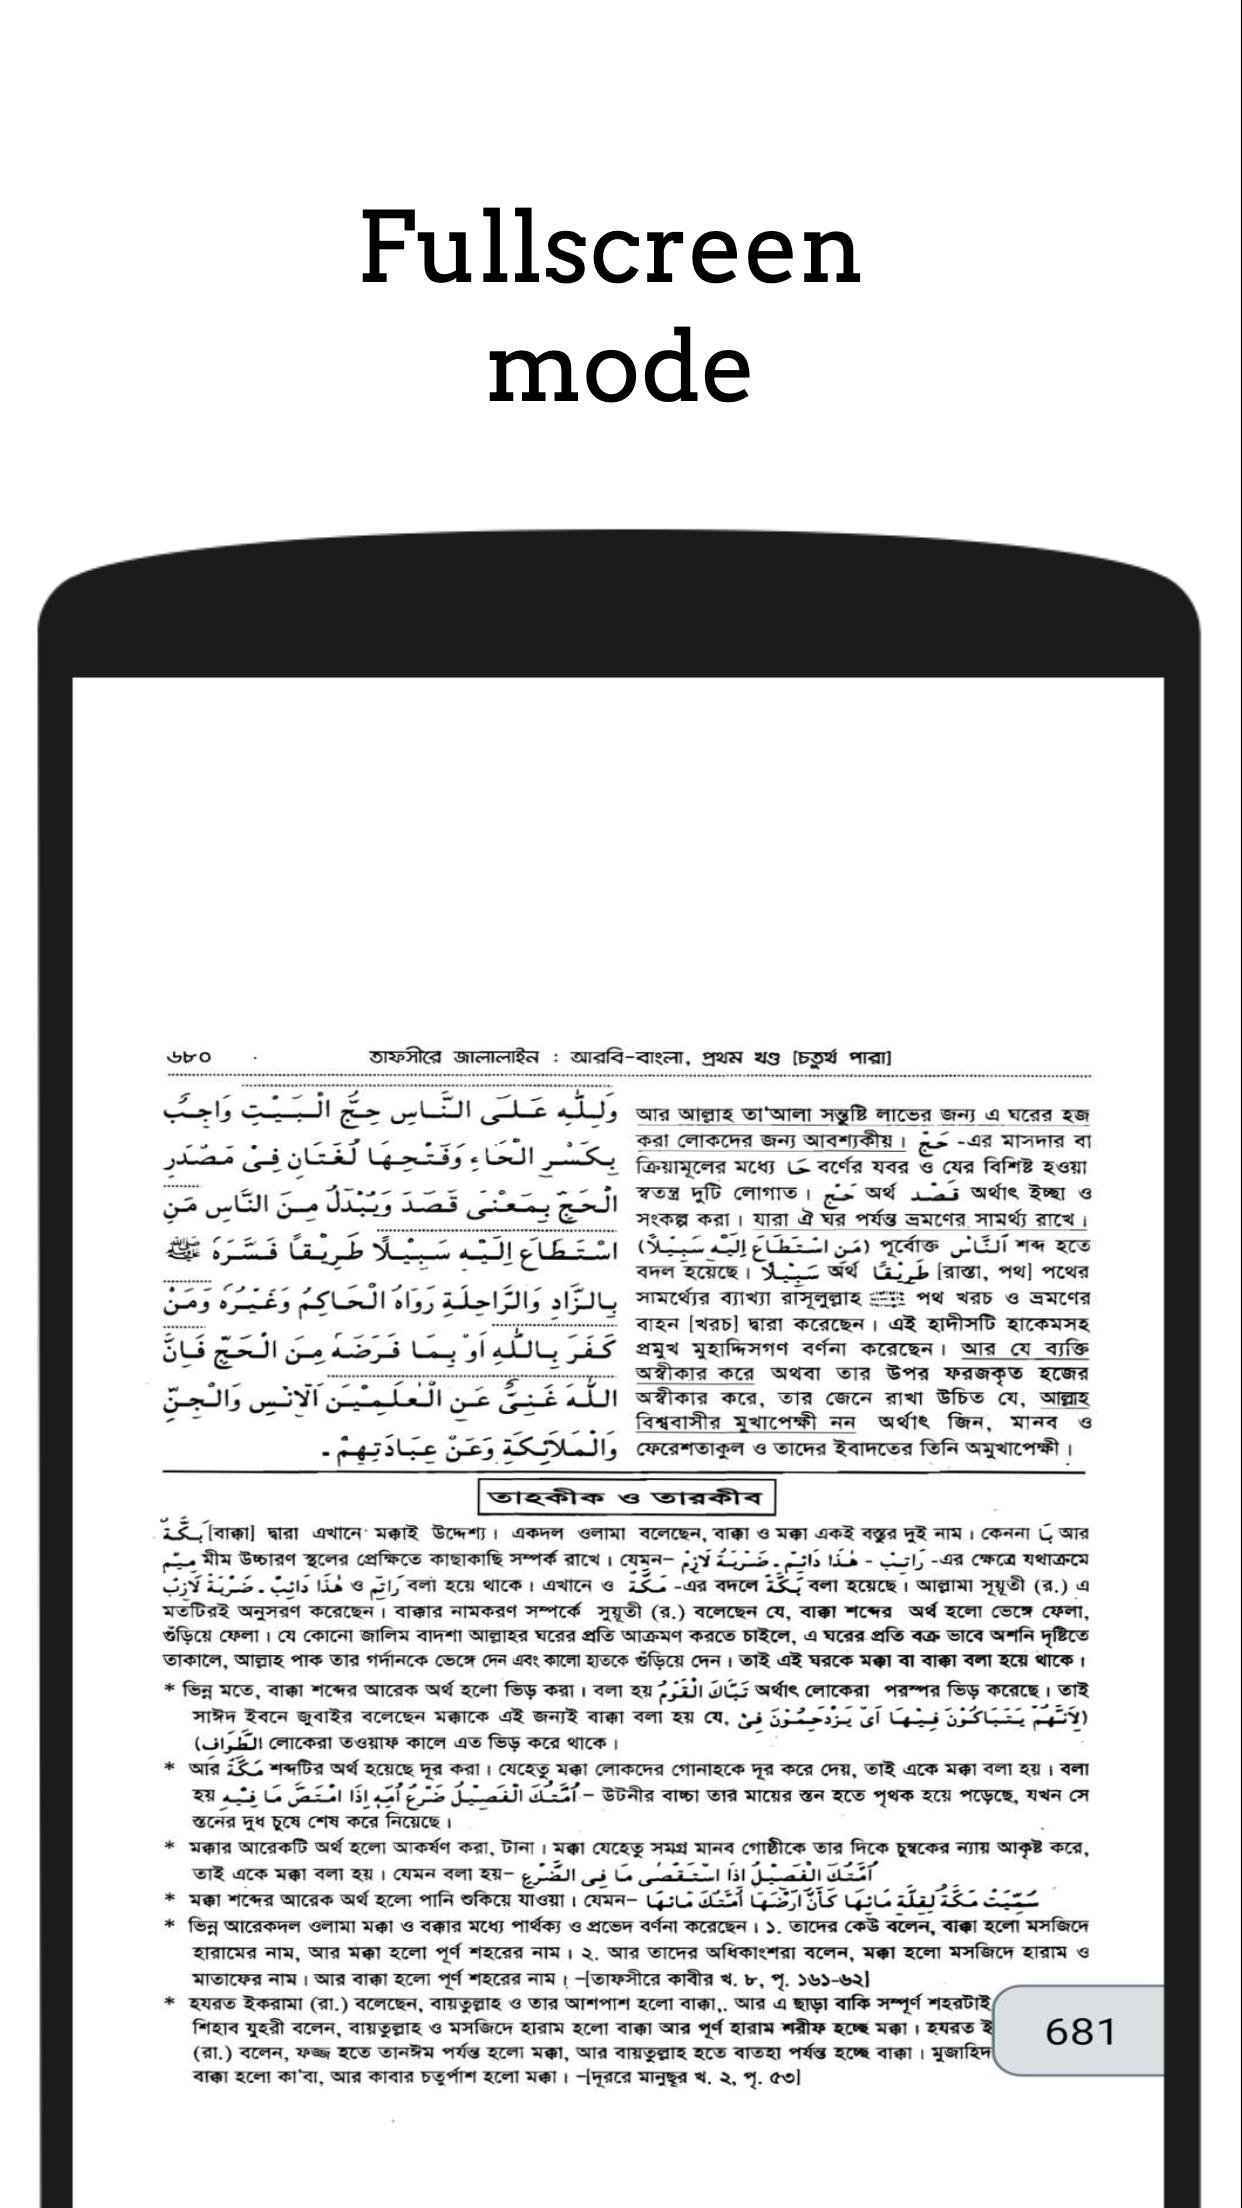 তাফসিরে জালালাইন - Tafsir Jalalaine 1.2 Screenshot 6